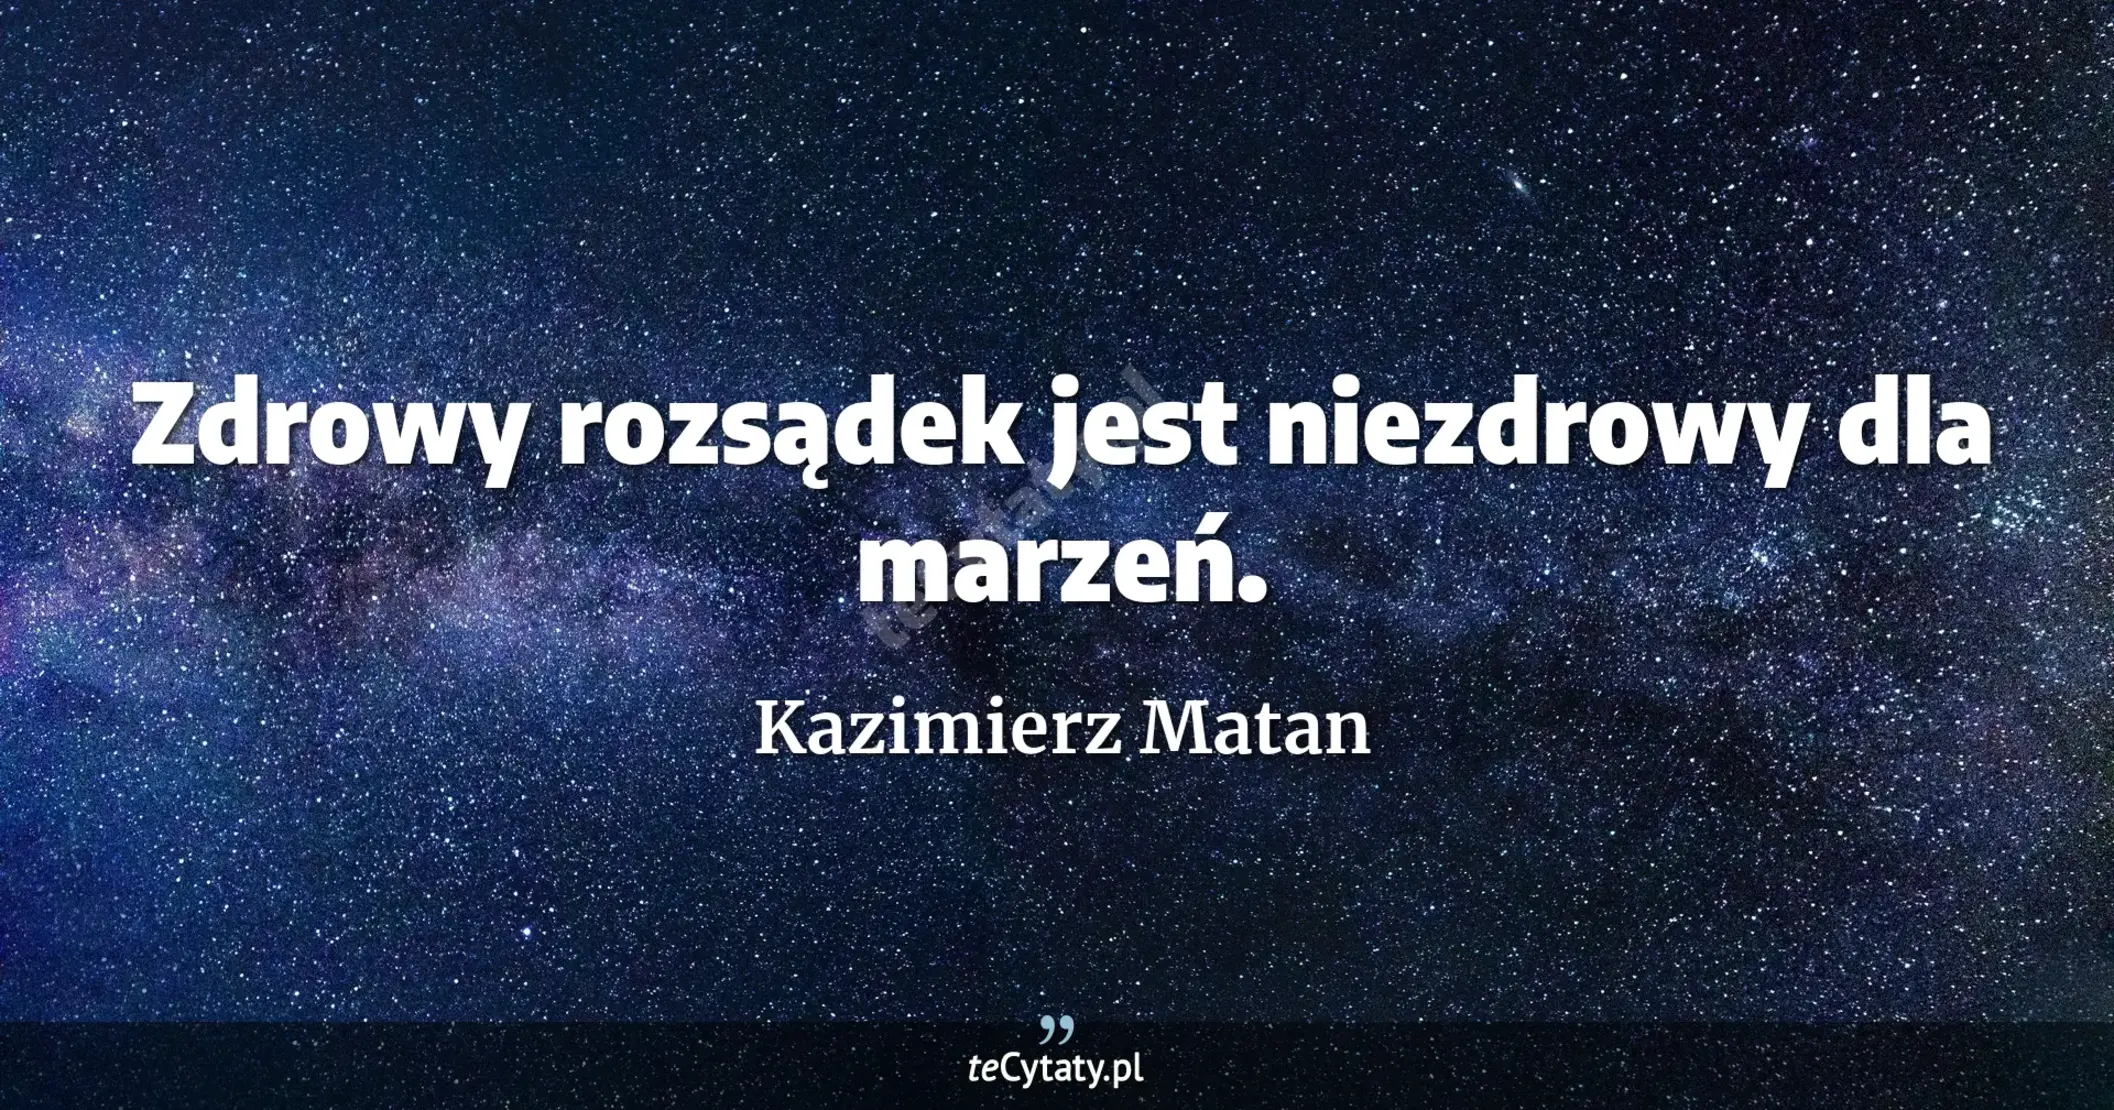 Zdrowy rozsądek jest niezdrowy dla marzeń. - Kazimierz Matan